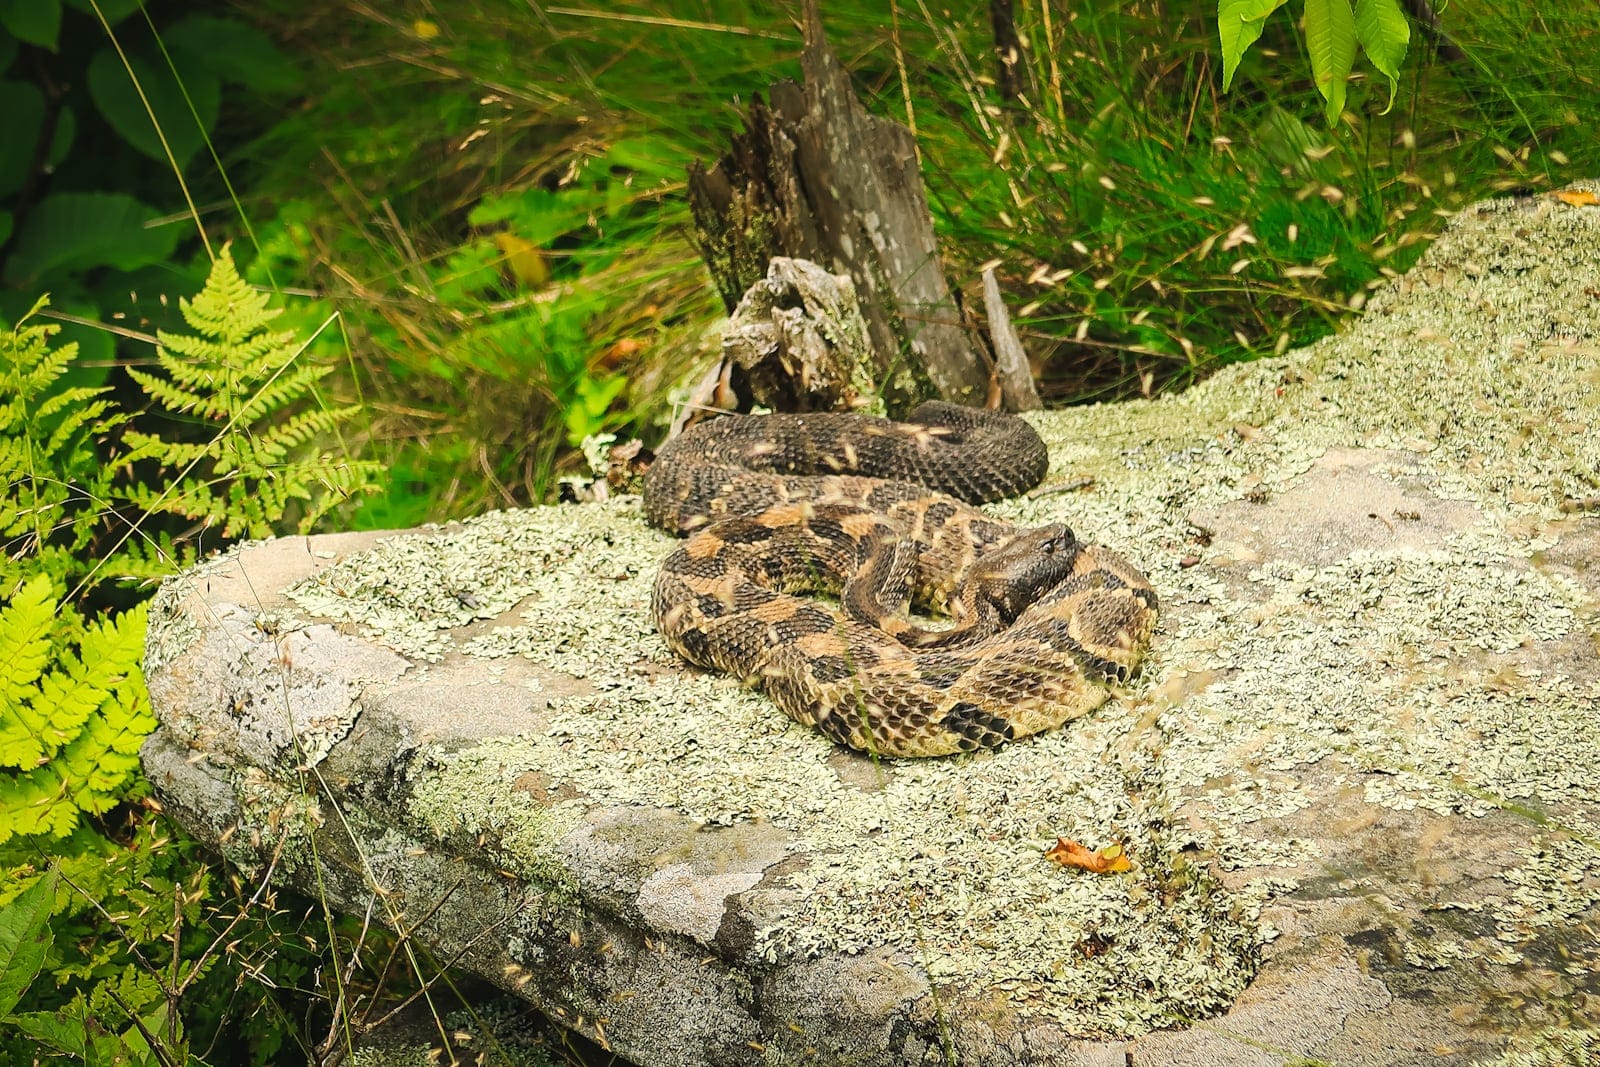 Catskills rattlesnakes